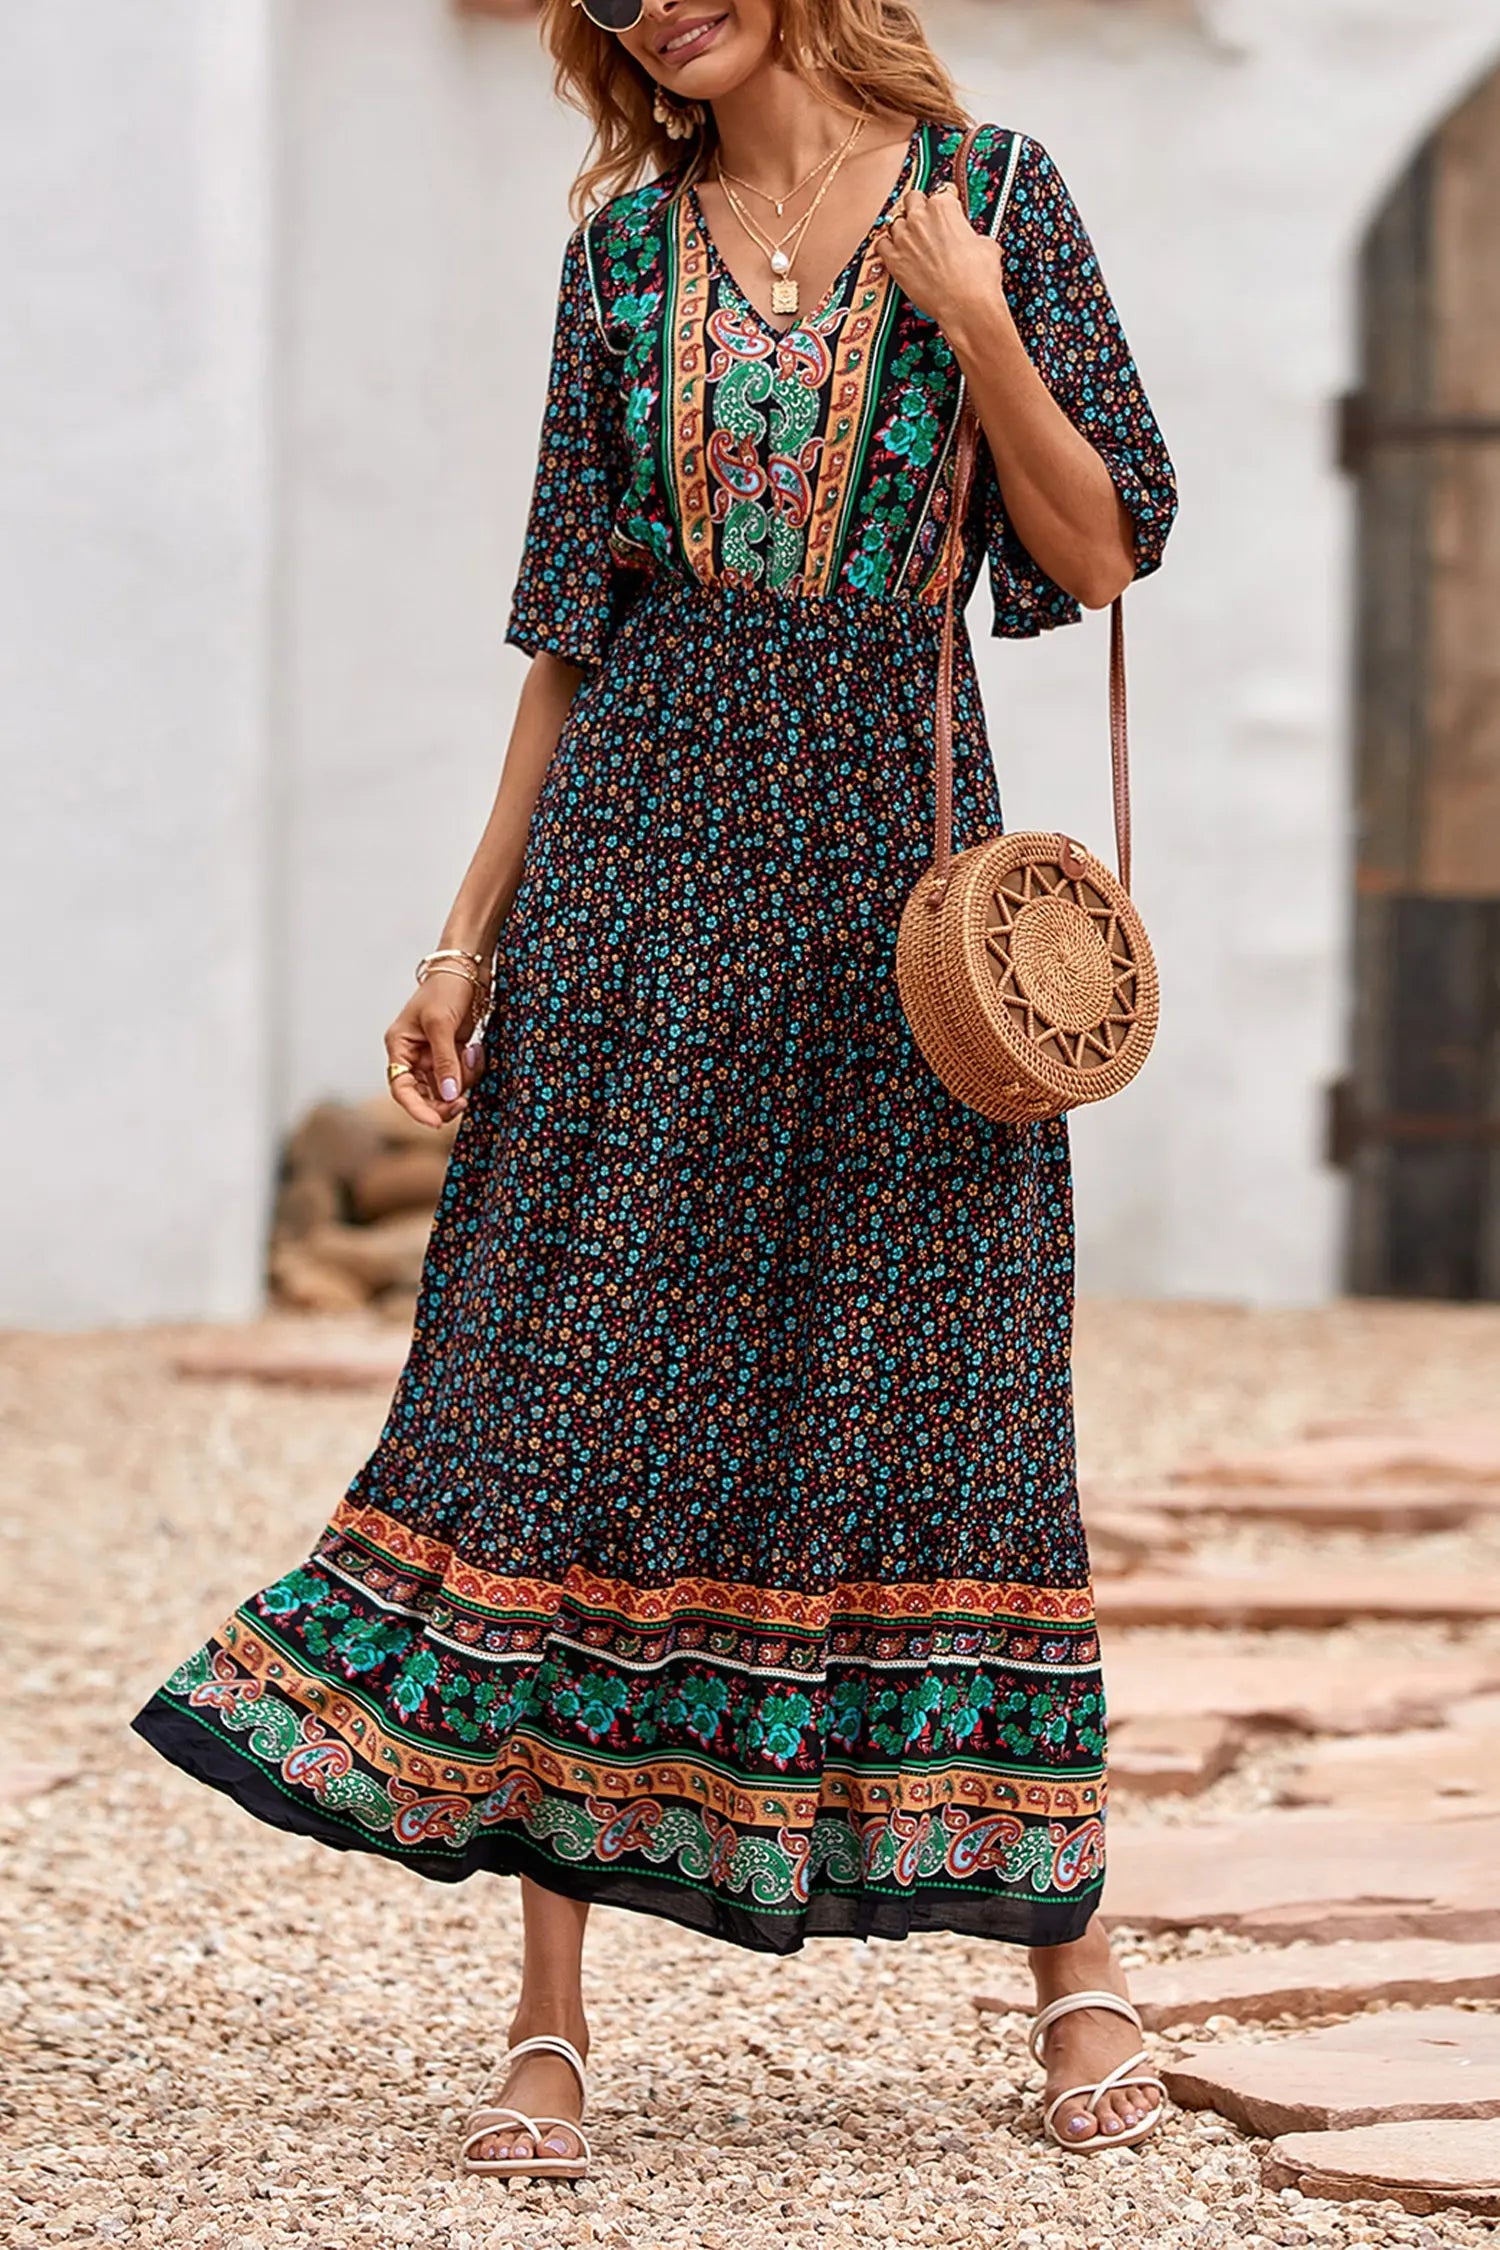 Bohemian Dresses & Boho Dresses for Women - prettygarden – PRETTYGARDEN